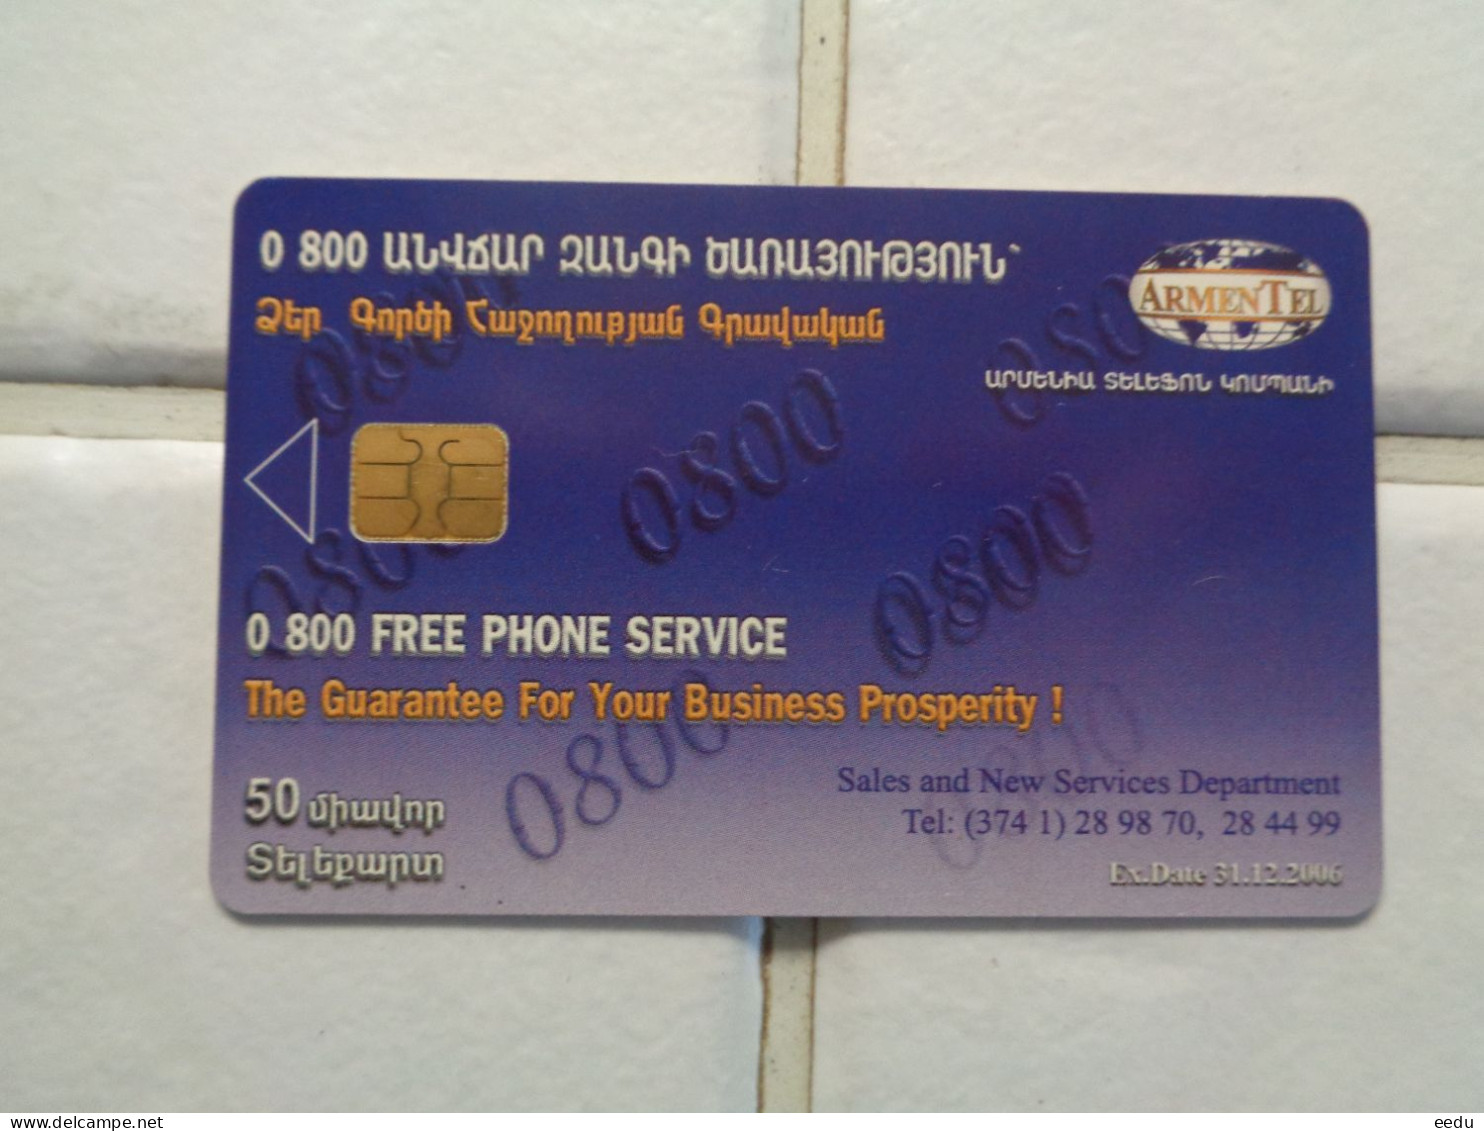 Armenia Phonecard - Armenia